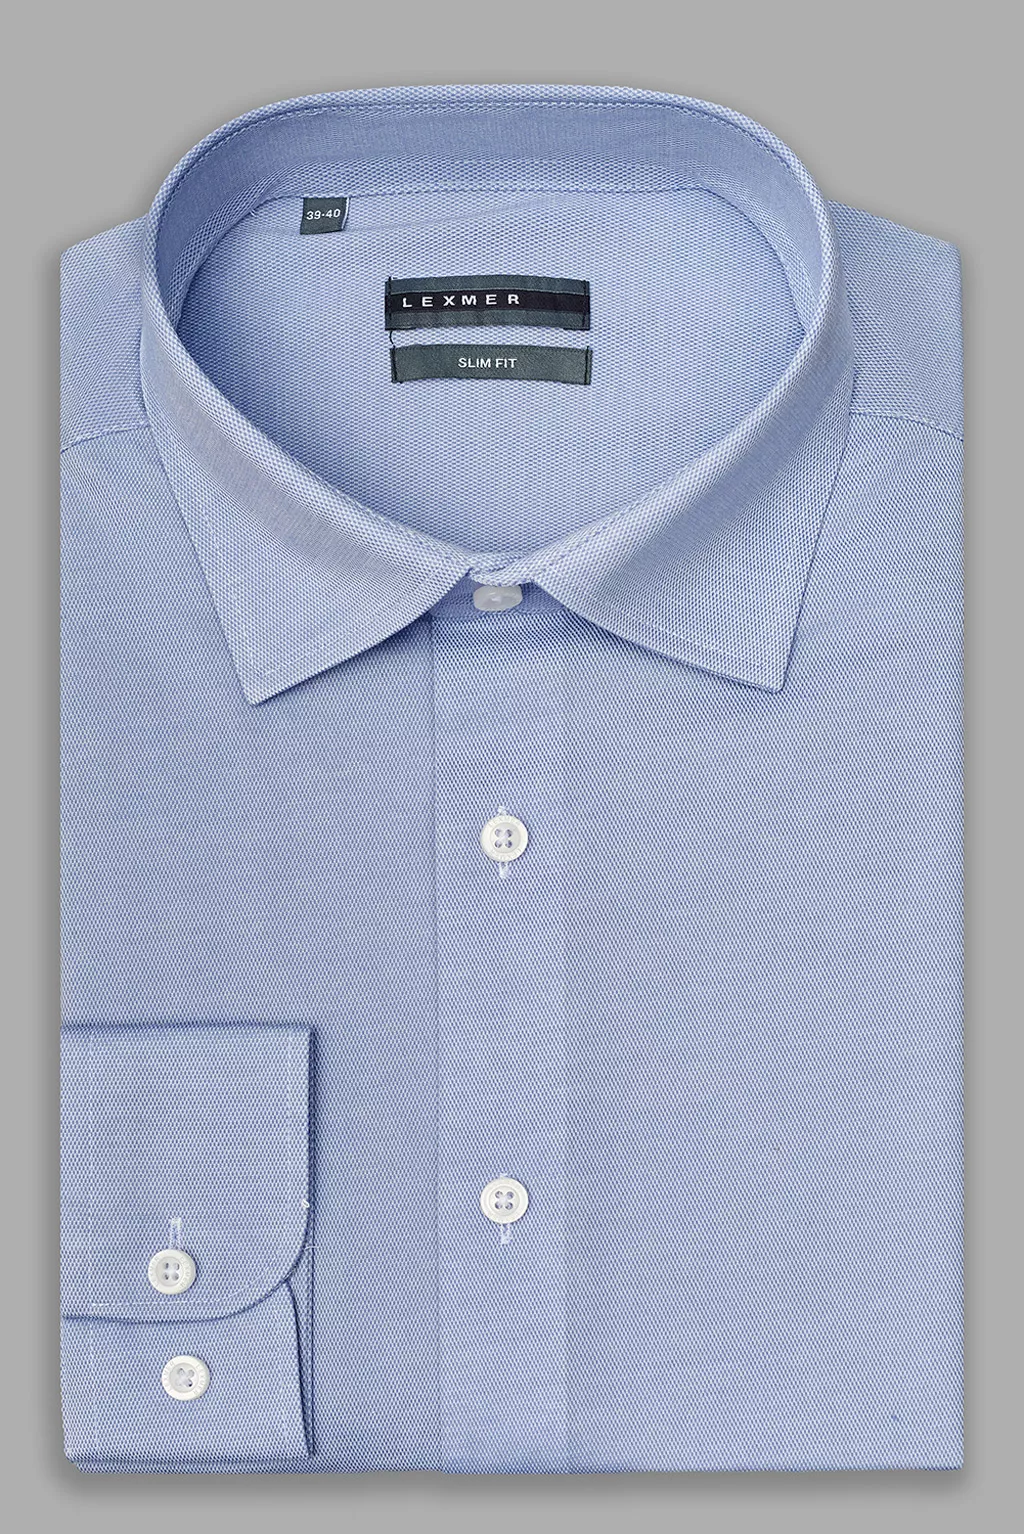 Серо-голубая рубашка с классическим воротником Slim Fit